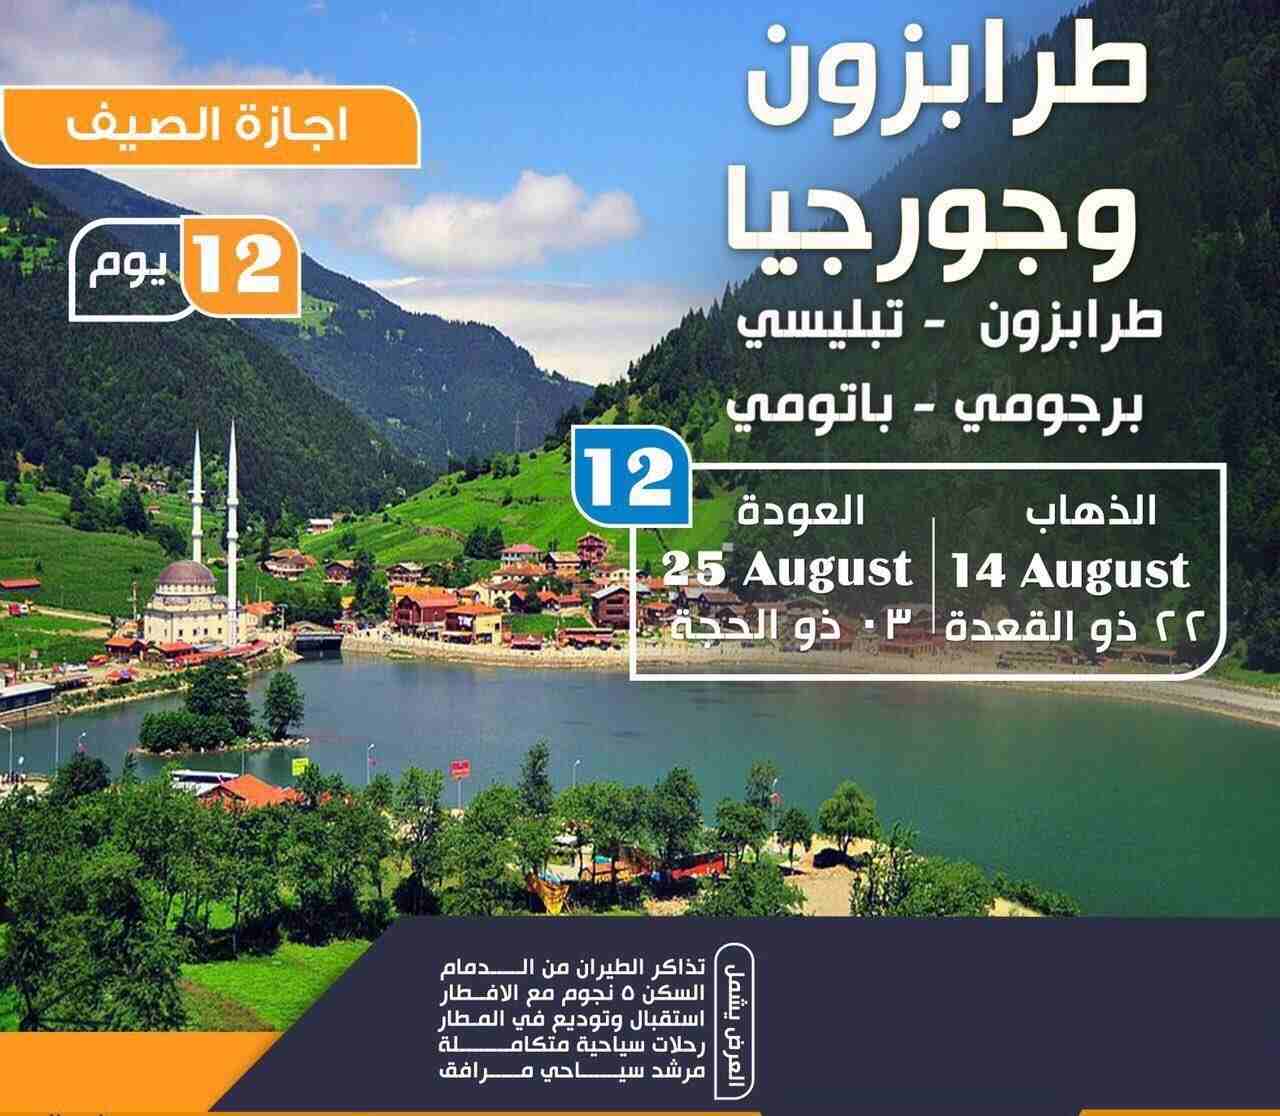 سياحة-و-سفربرنامج سياحي في طرابزون لمدة 10 ايام - الشمال التركي سياحة


قائمة...